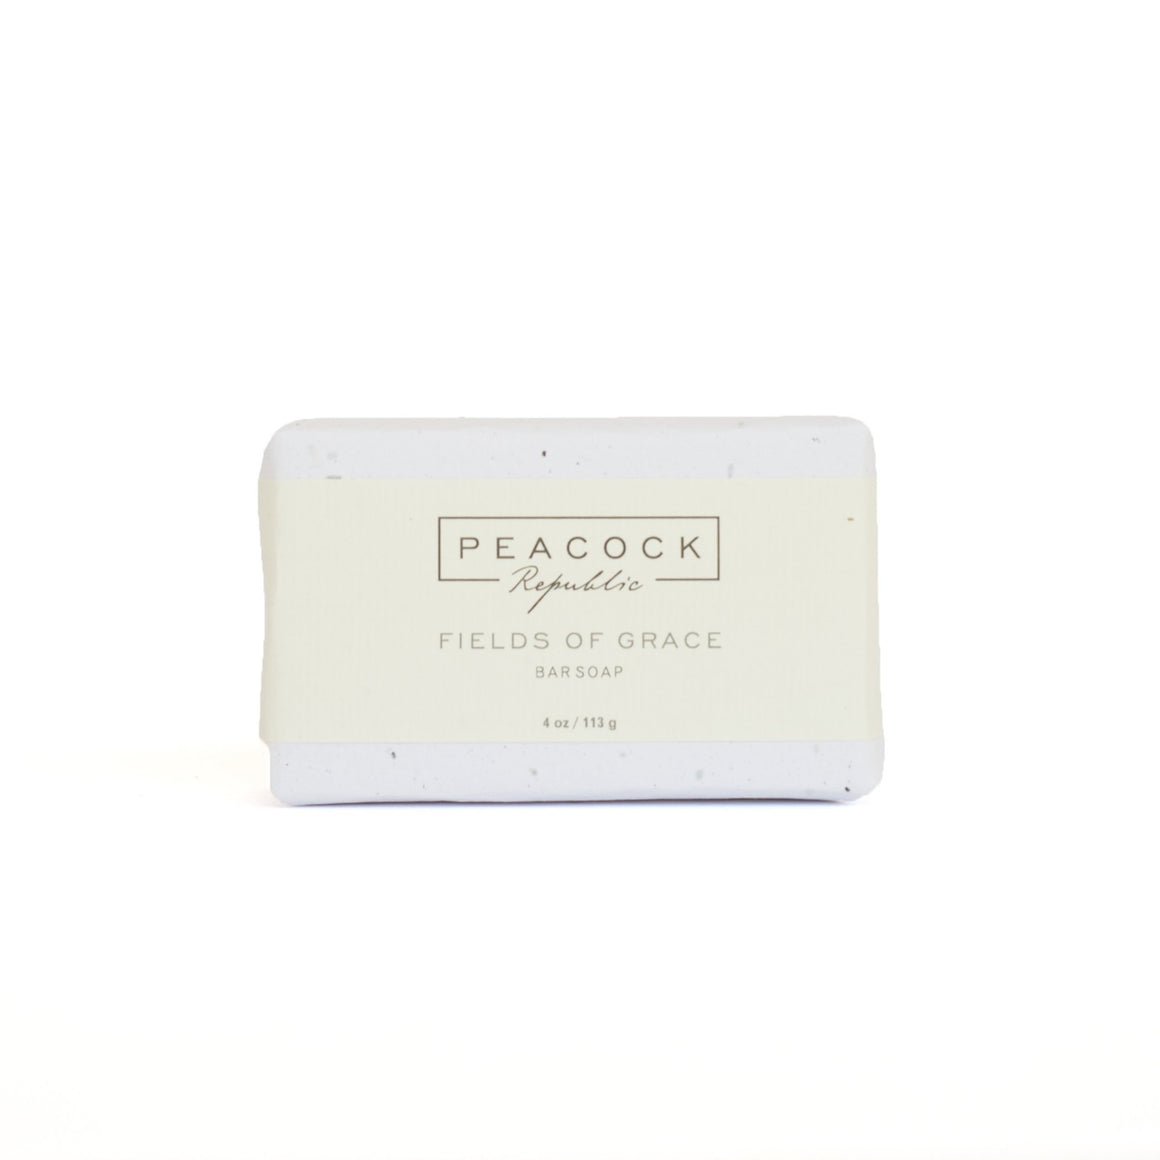 Fields of Grace Face & Body Bar Soap